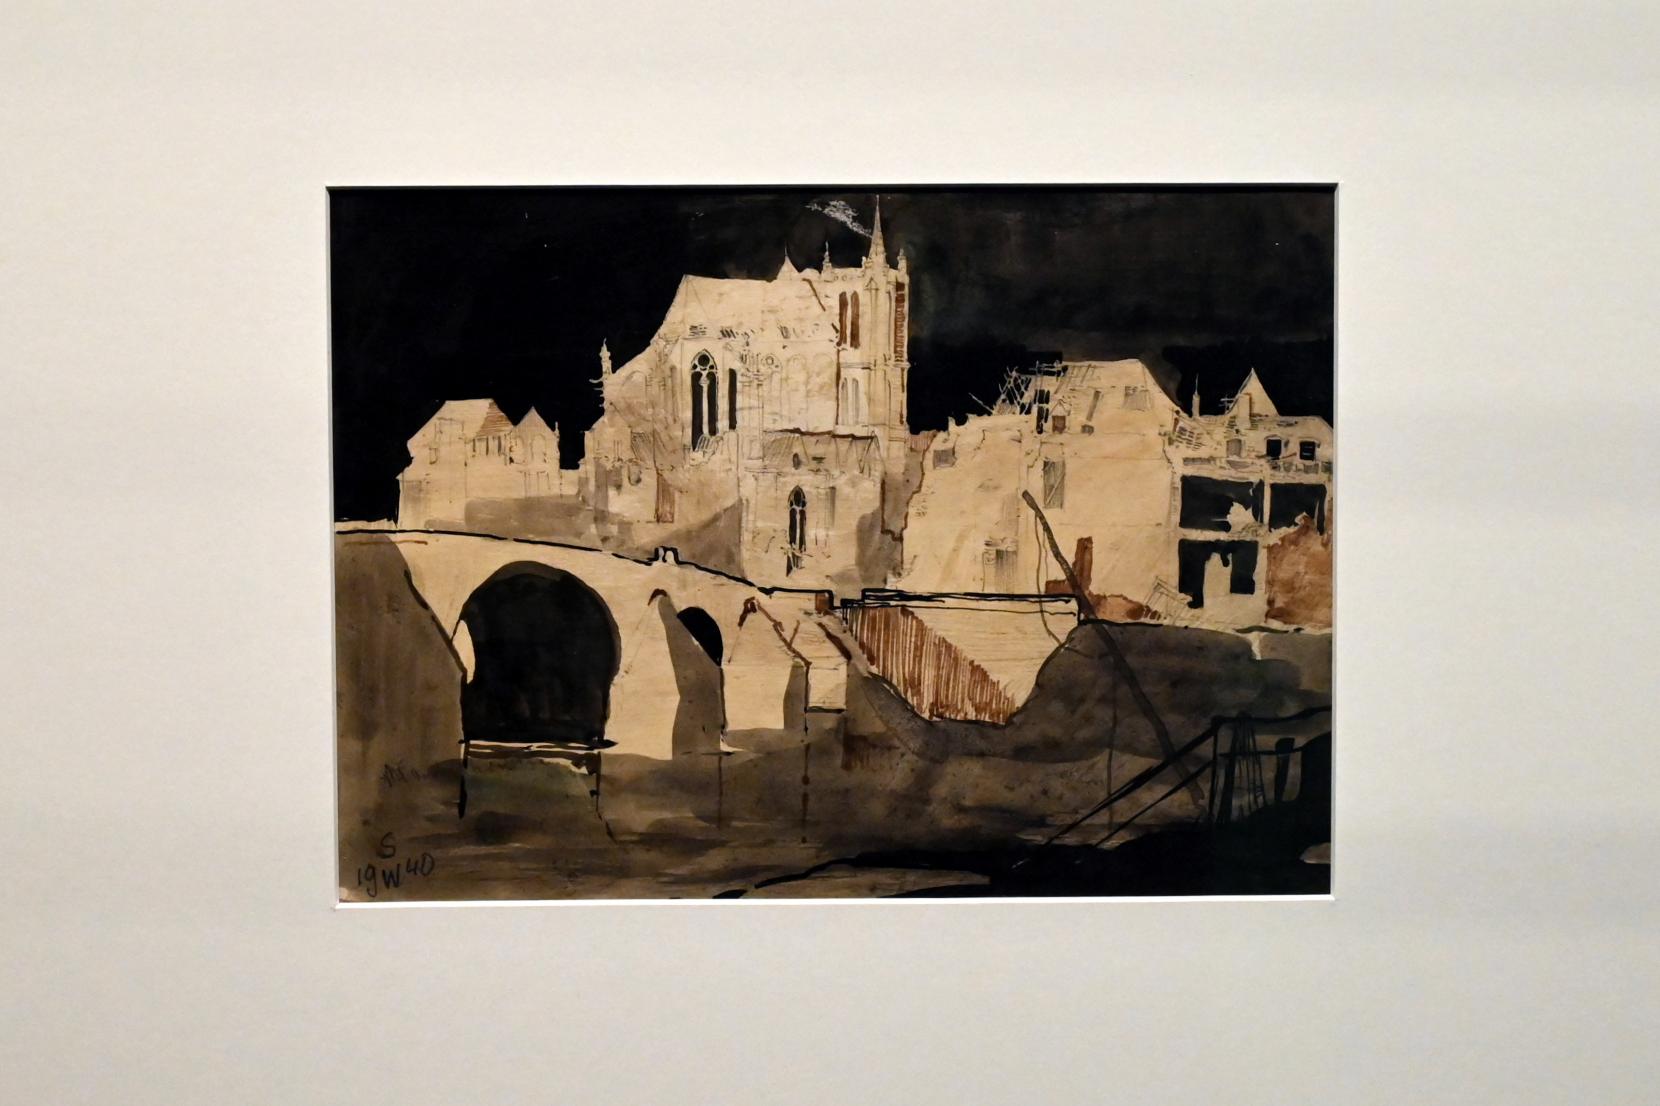 Willi Sitte (1938–2002), Landschaft in Frankreich, Halle (Saale), Kunstmuseum Moritzburg, Ausstellung "Sittes Welt" vom 03.10.2021 - 06.02.2022, Saal 2, 1940